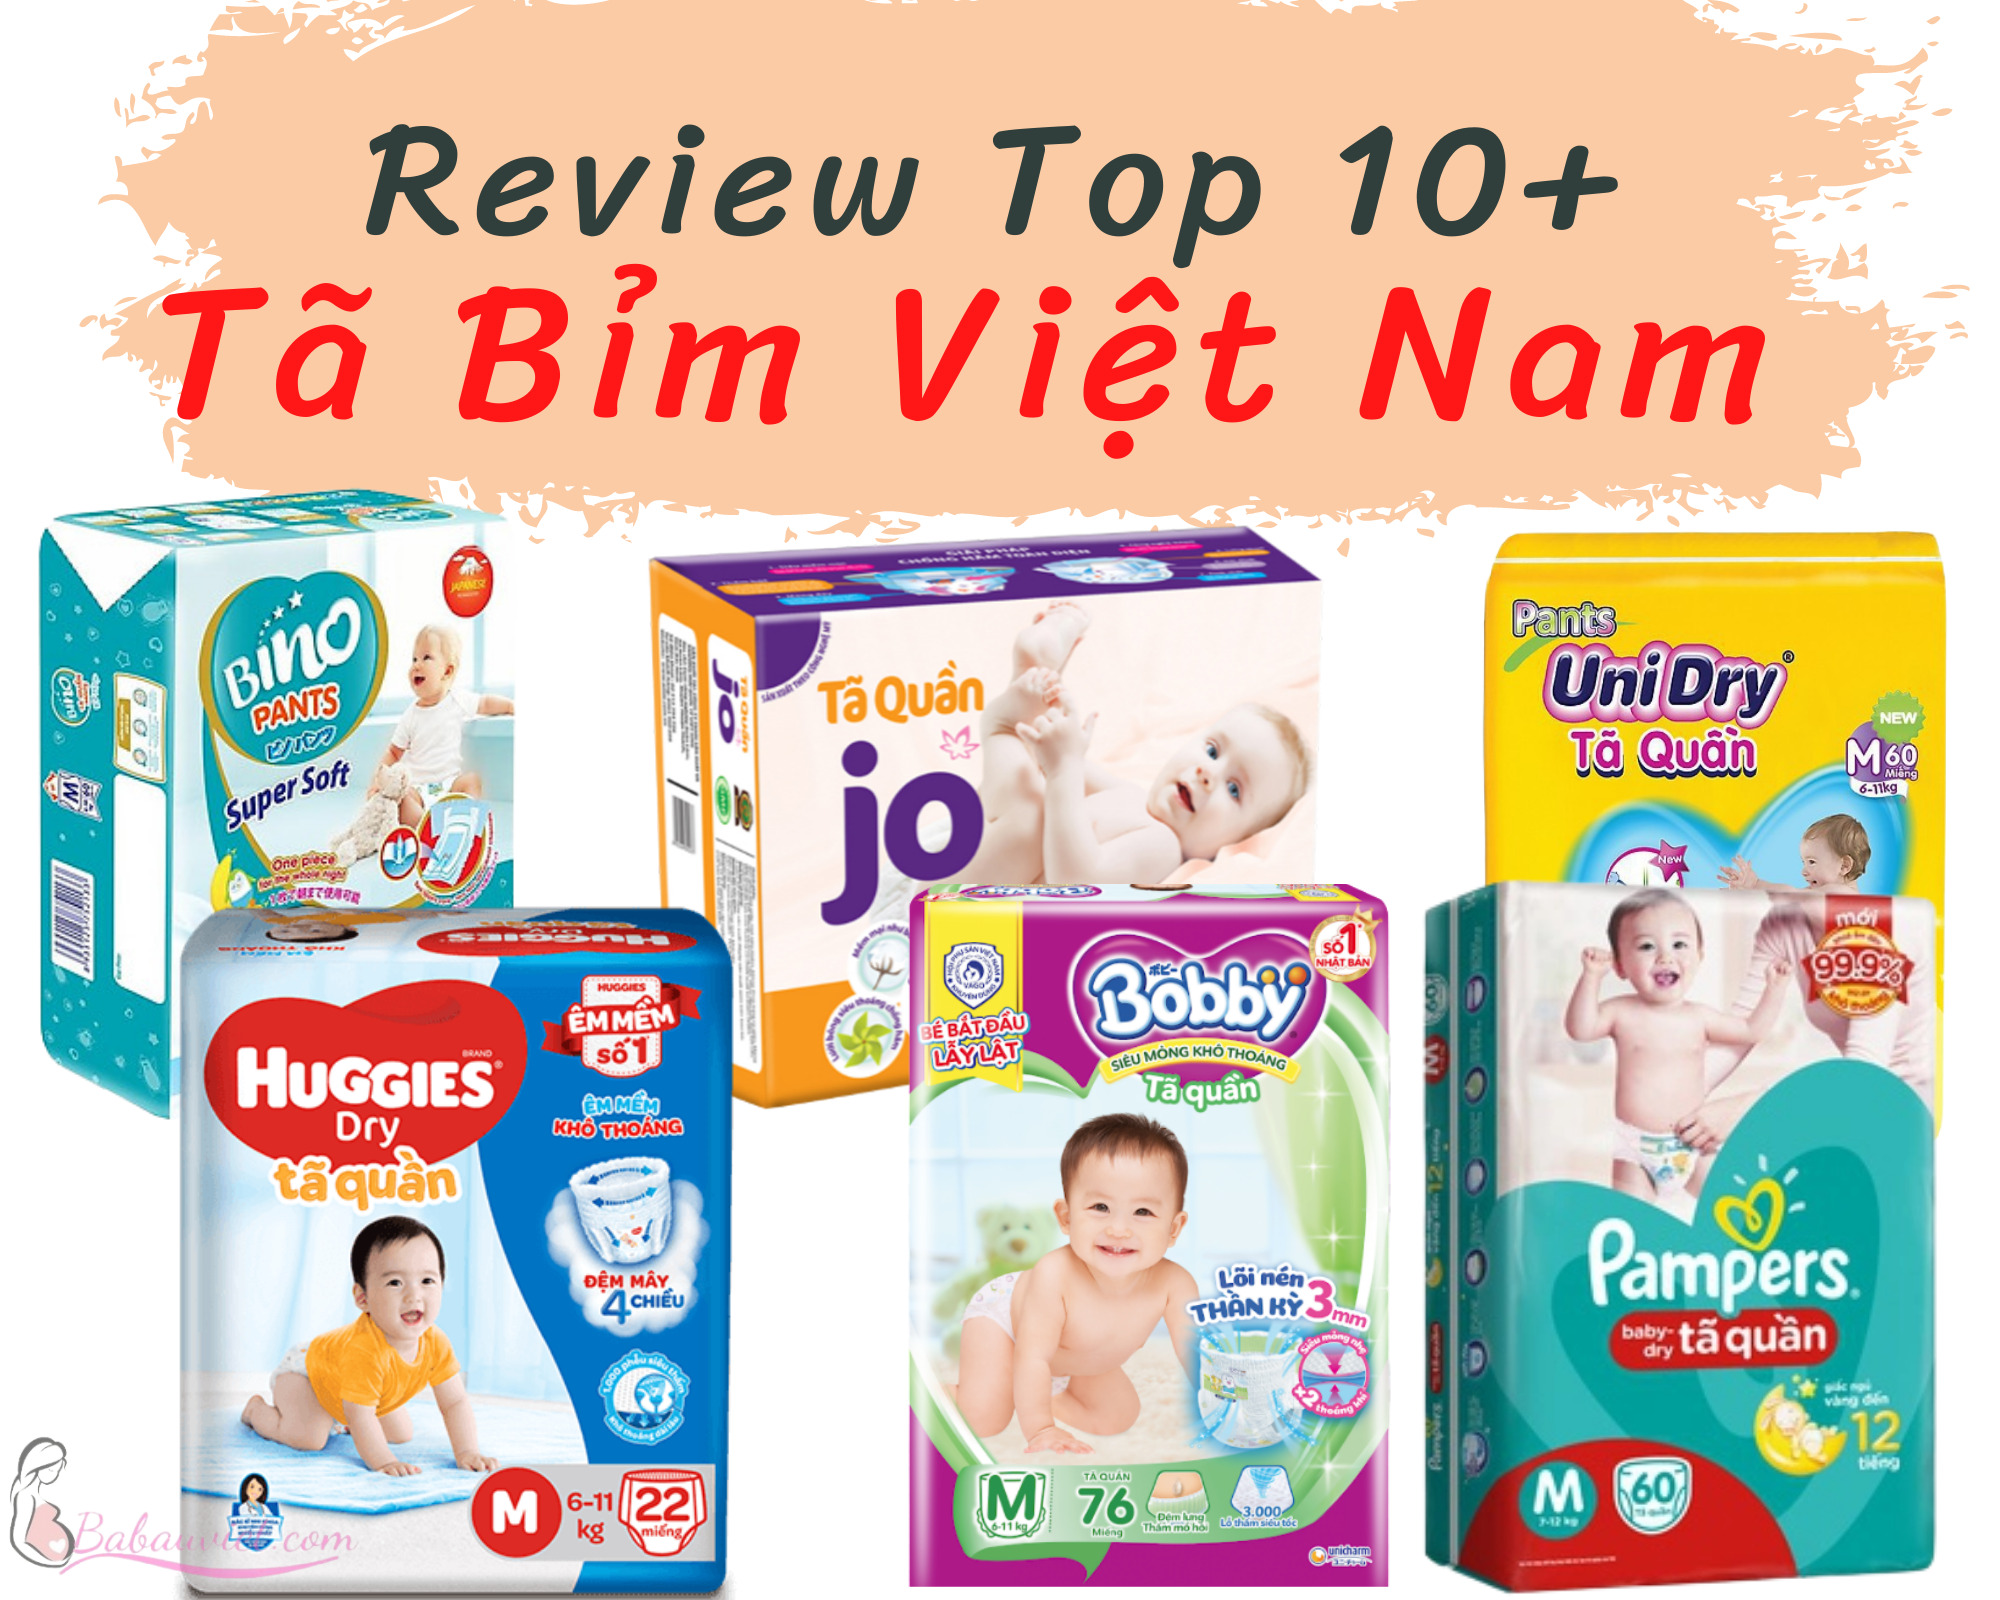 Bỉm Việt Nam Sản Xuất loại nào tốt nhất?